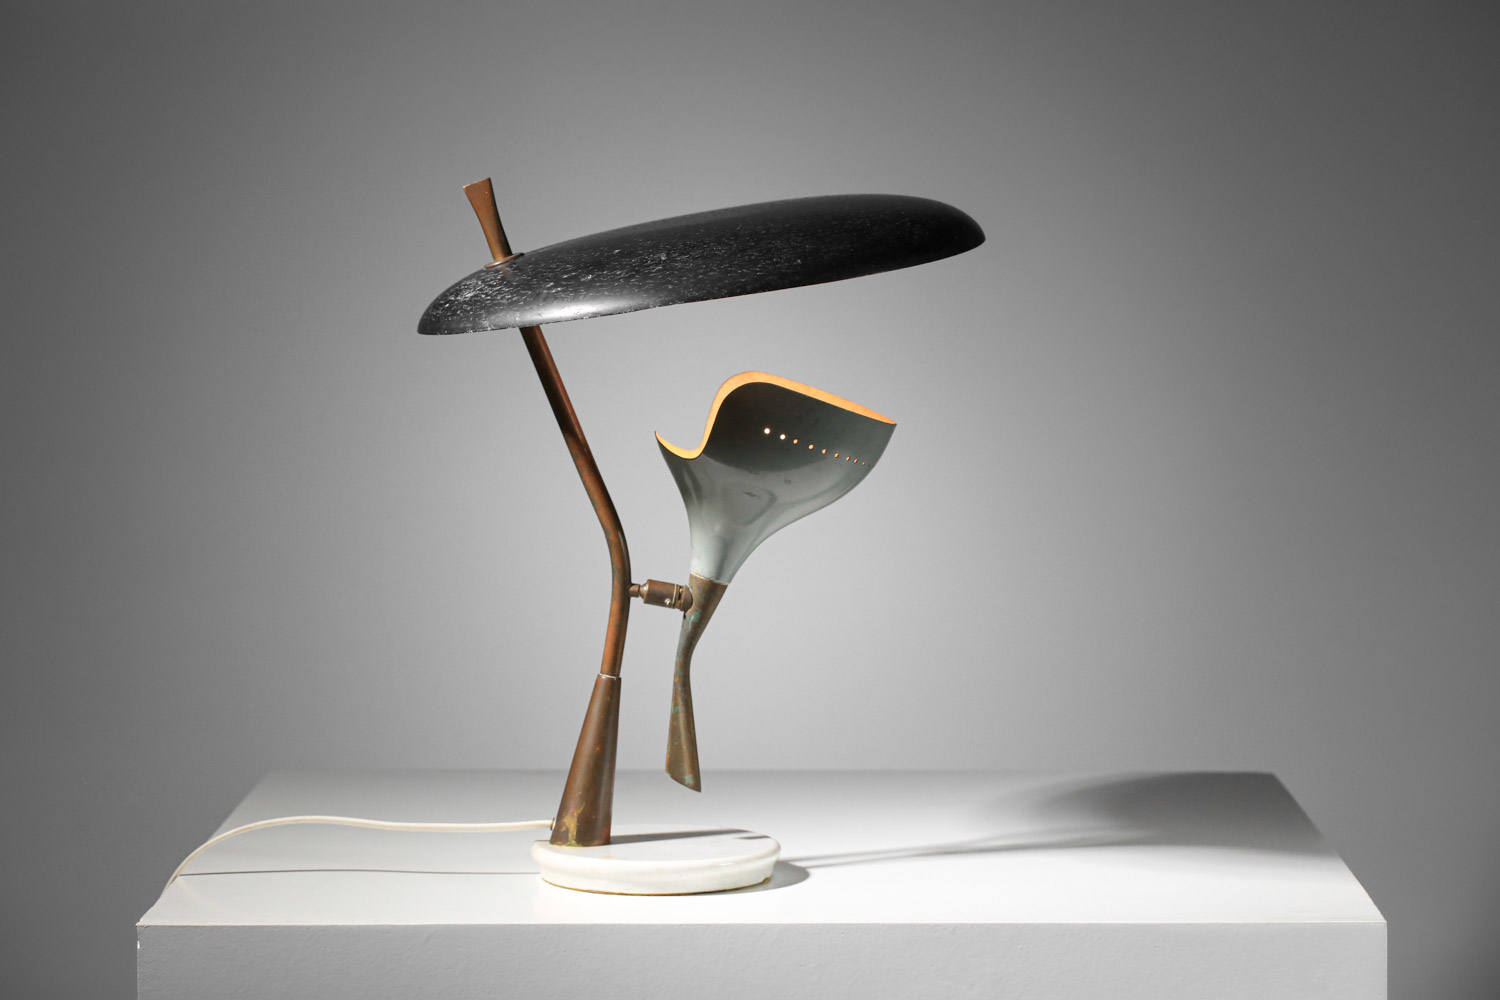 Lampe de table stillux italienne des années 60 grise et noire - G718